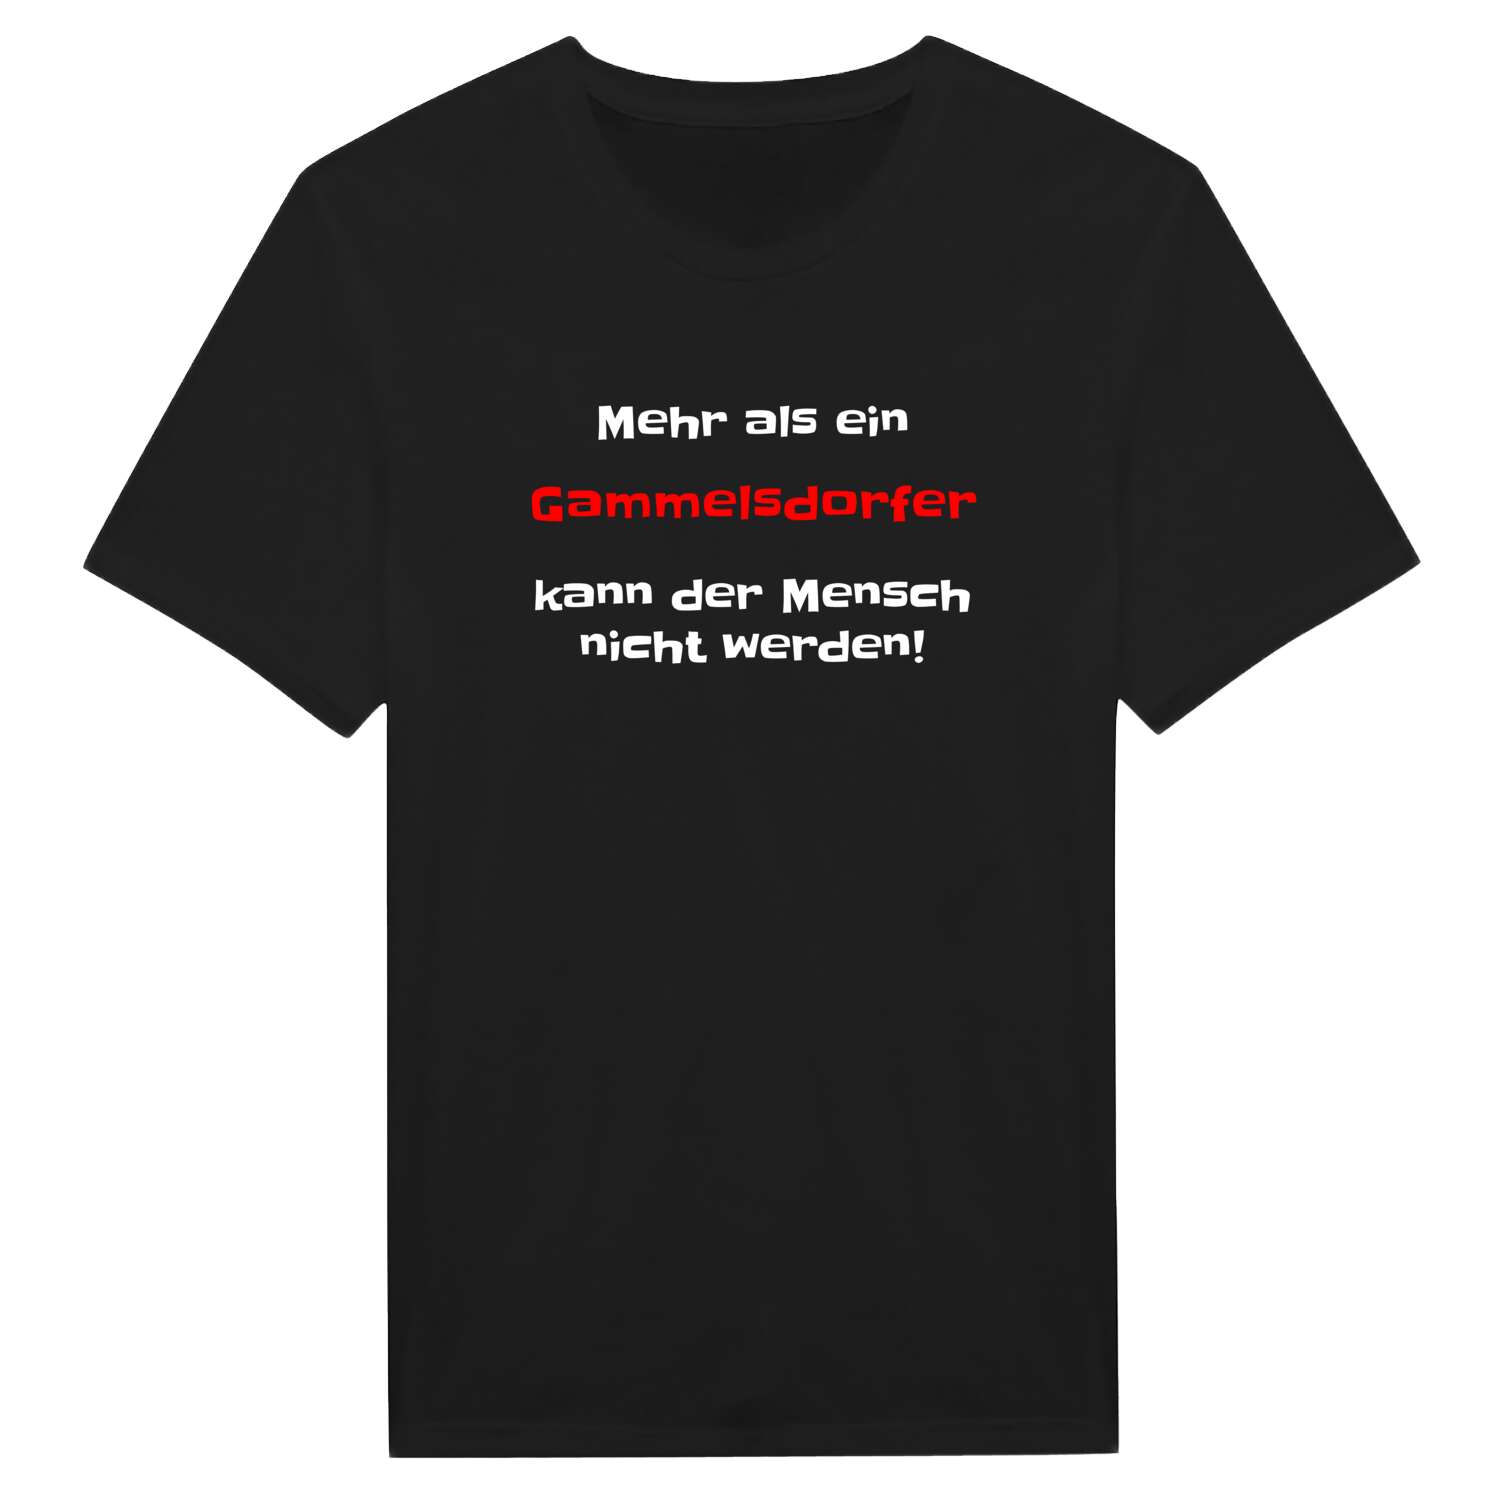 Gammelsdorf T-Shirt »Mehr als ein«